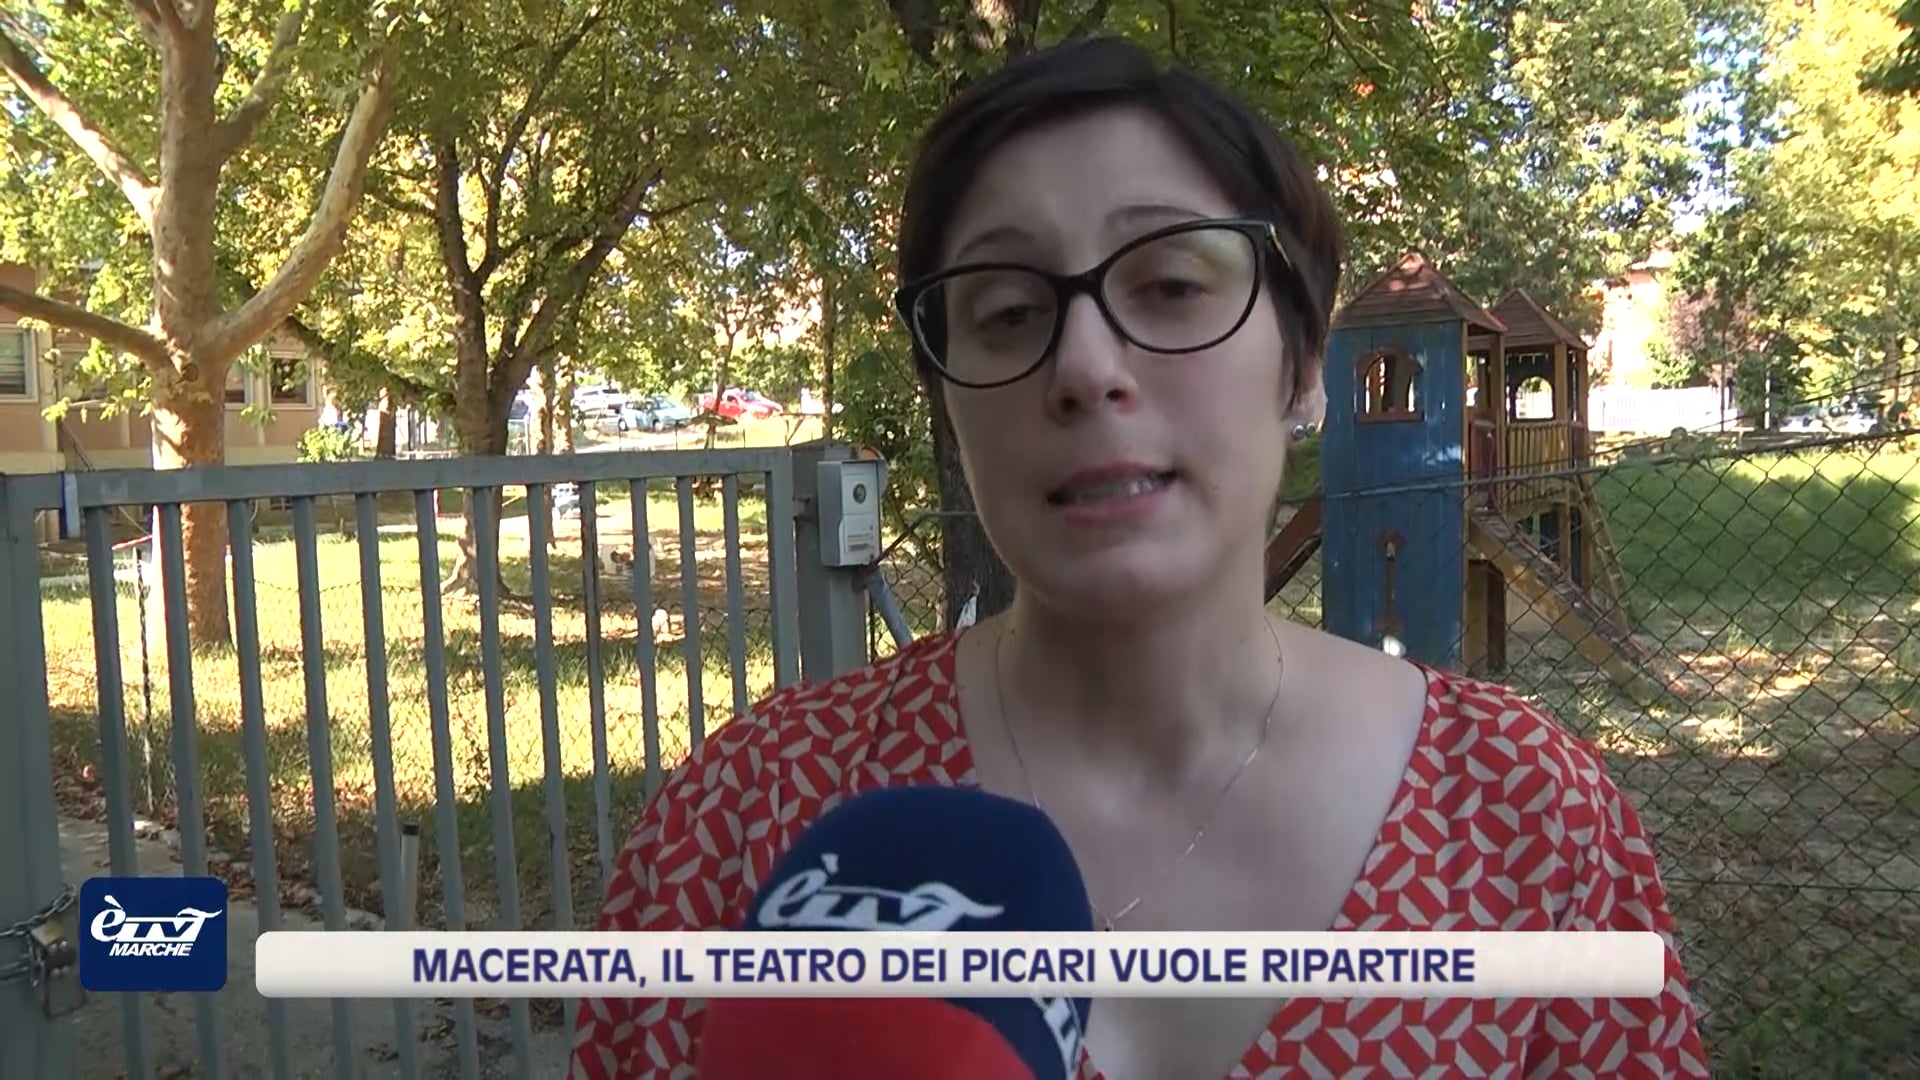 Macerata, Il Teatro dei Picari vuole ripartire - VIDEO